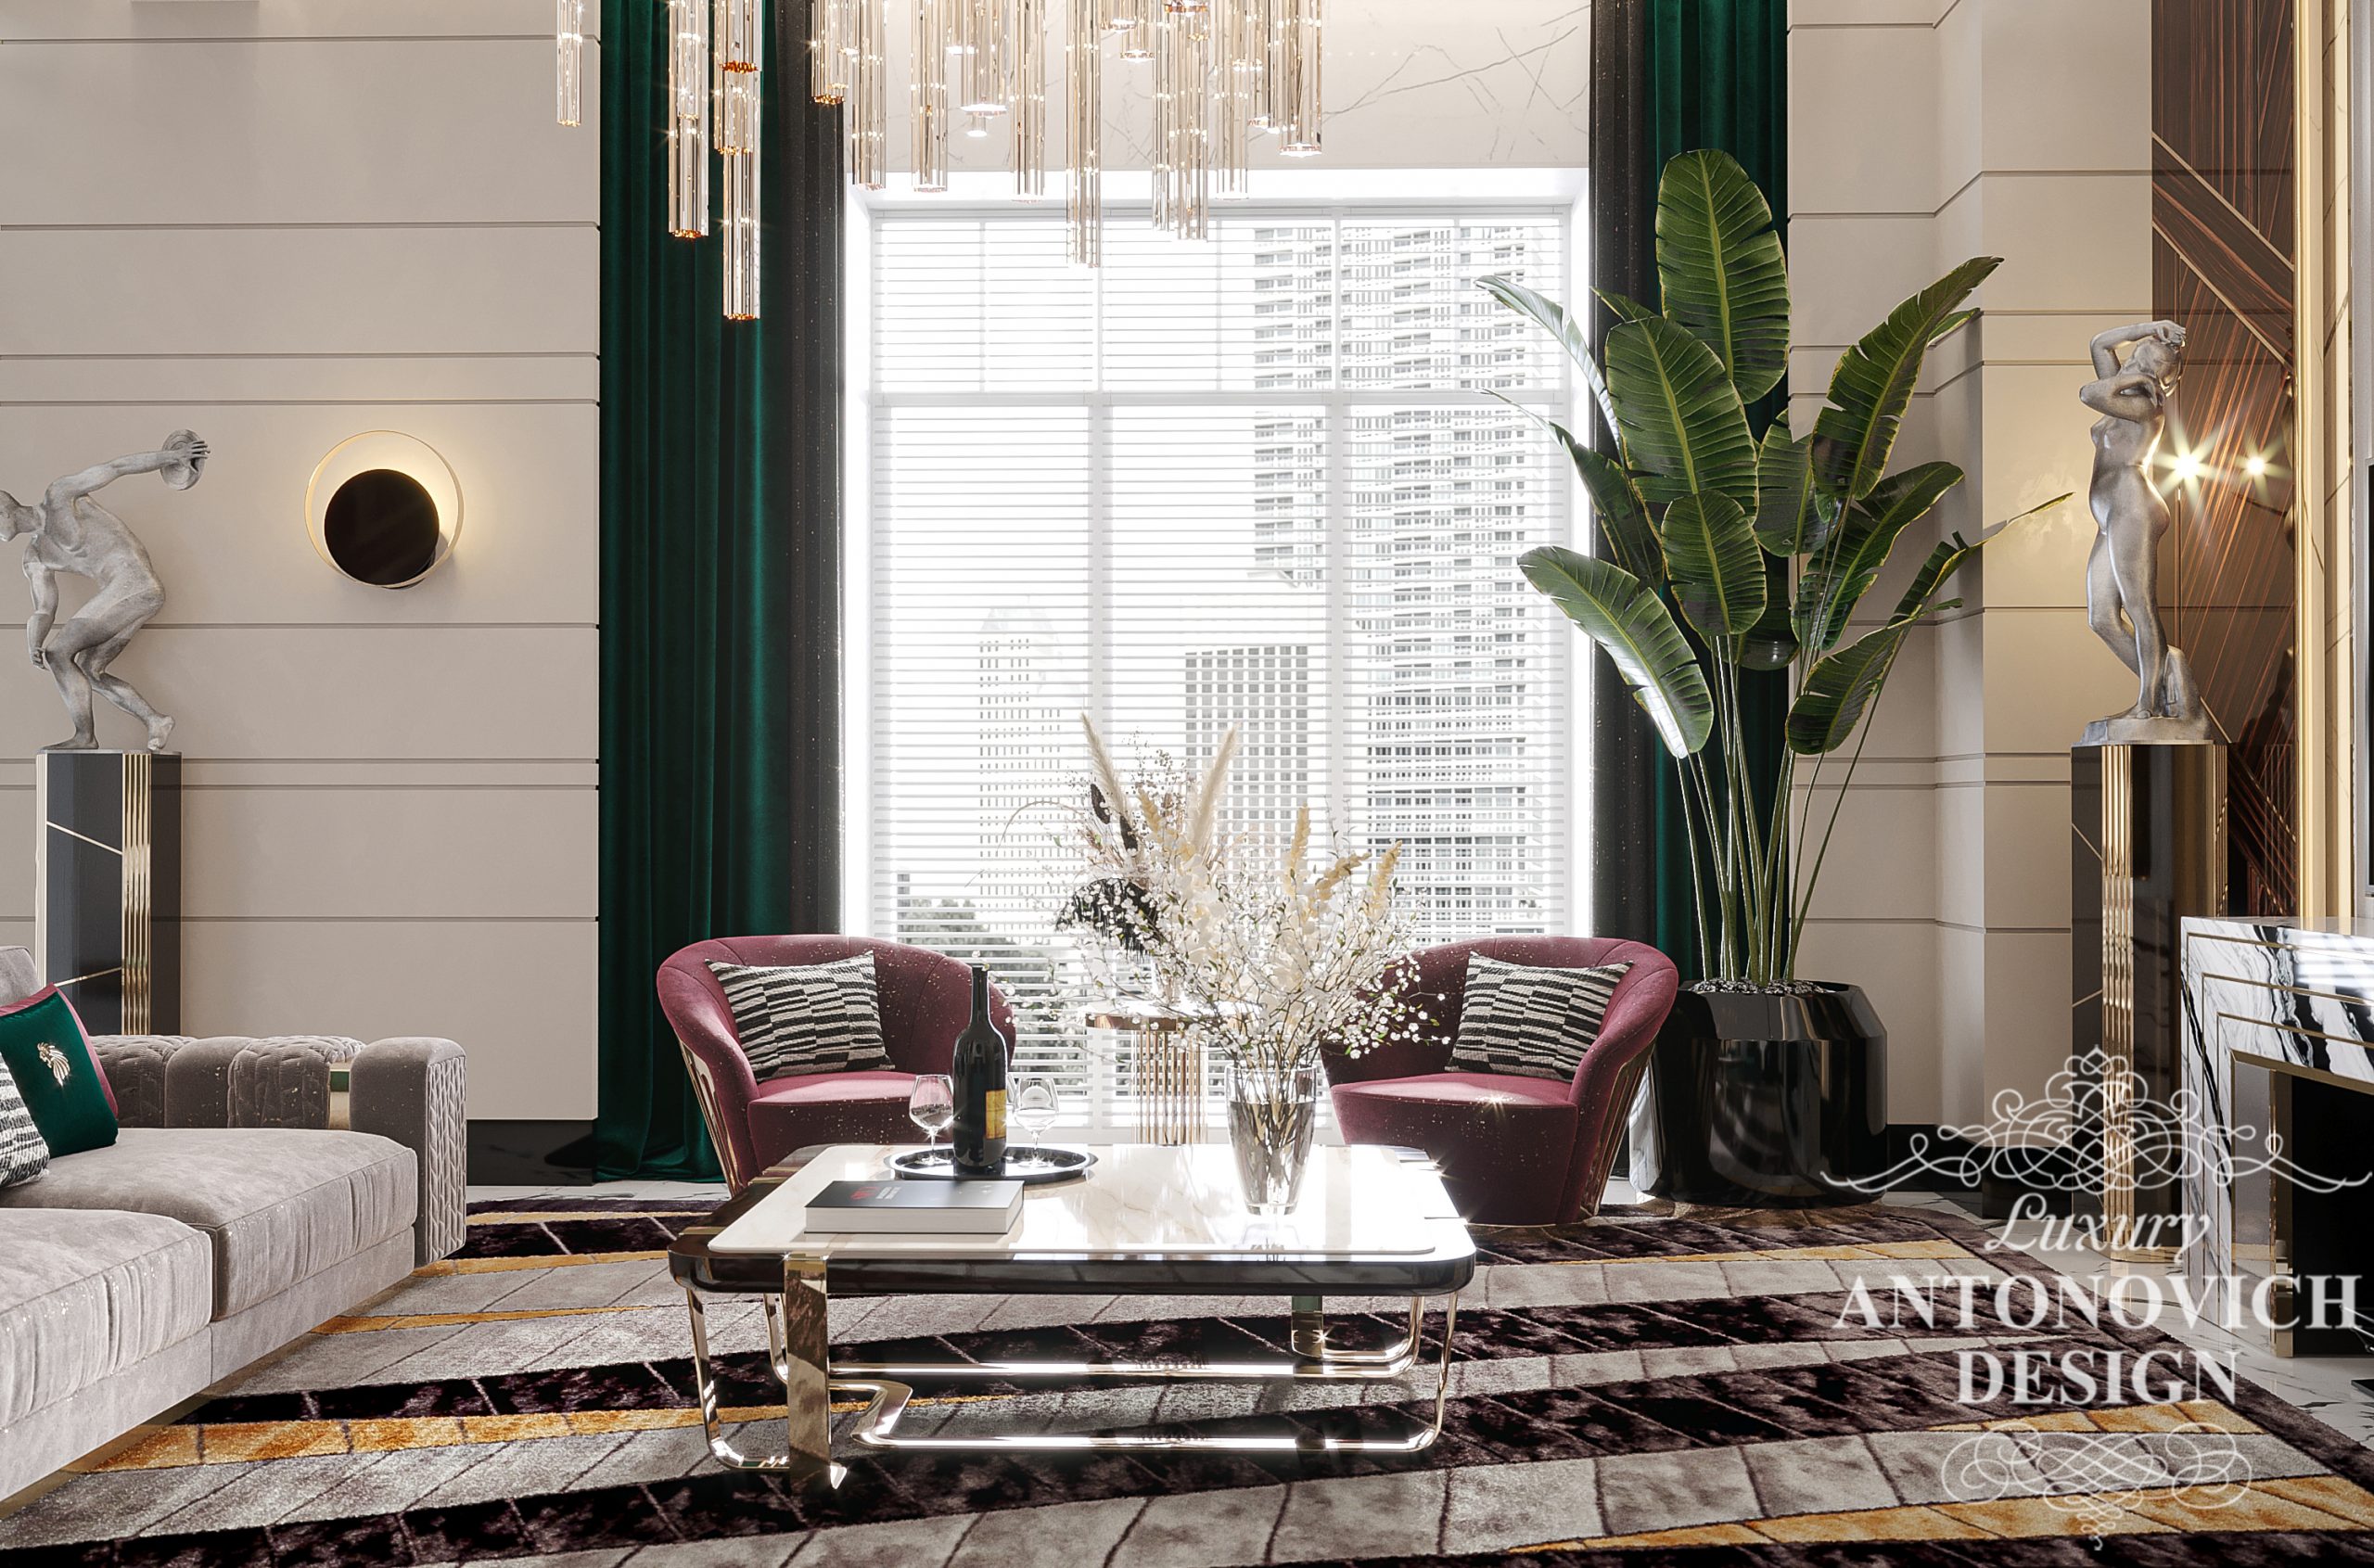 Бордовые, винные, изумрудные оттенки мебели в интерьере роскошной гостиной частного дома